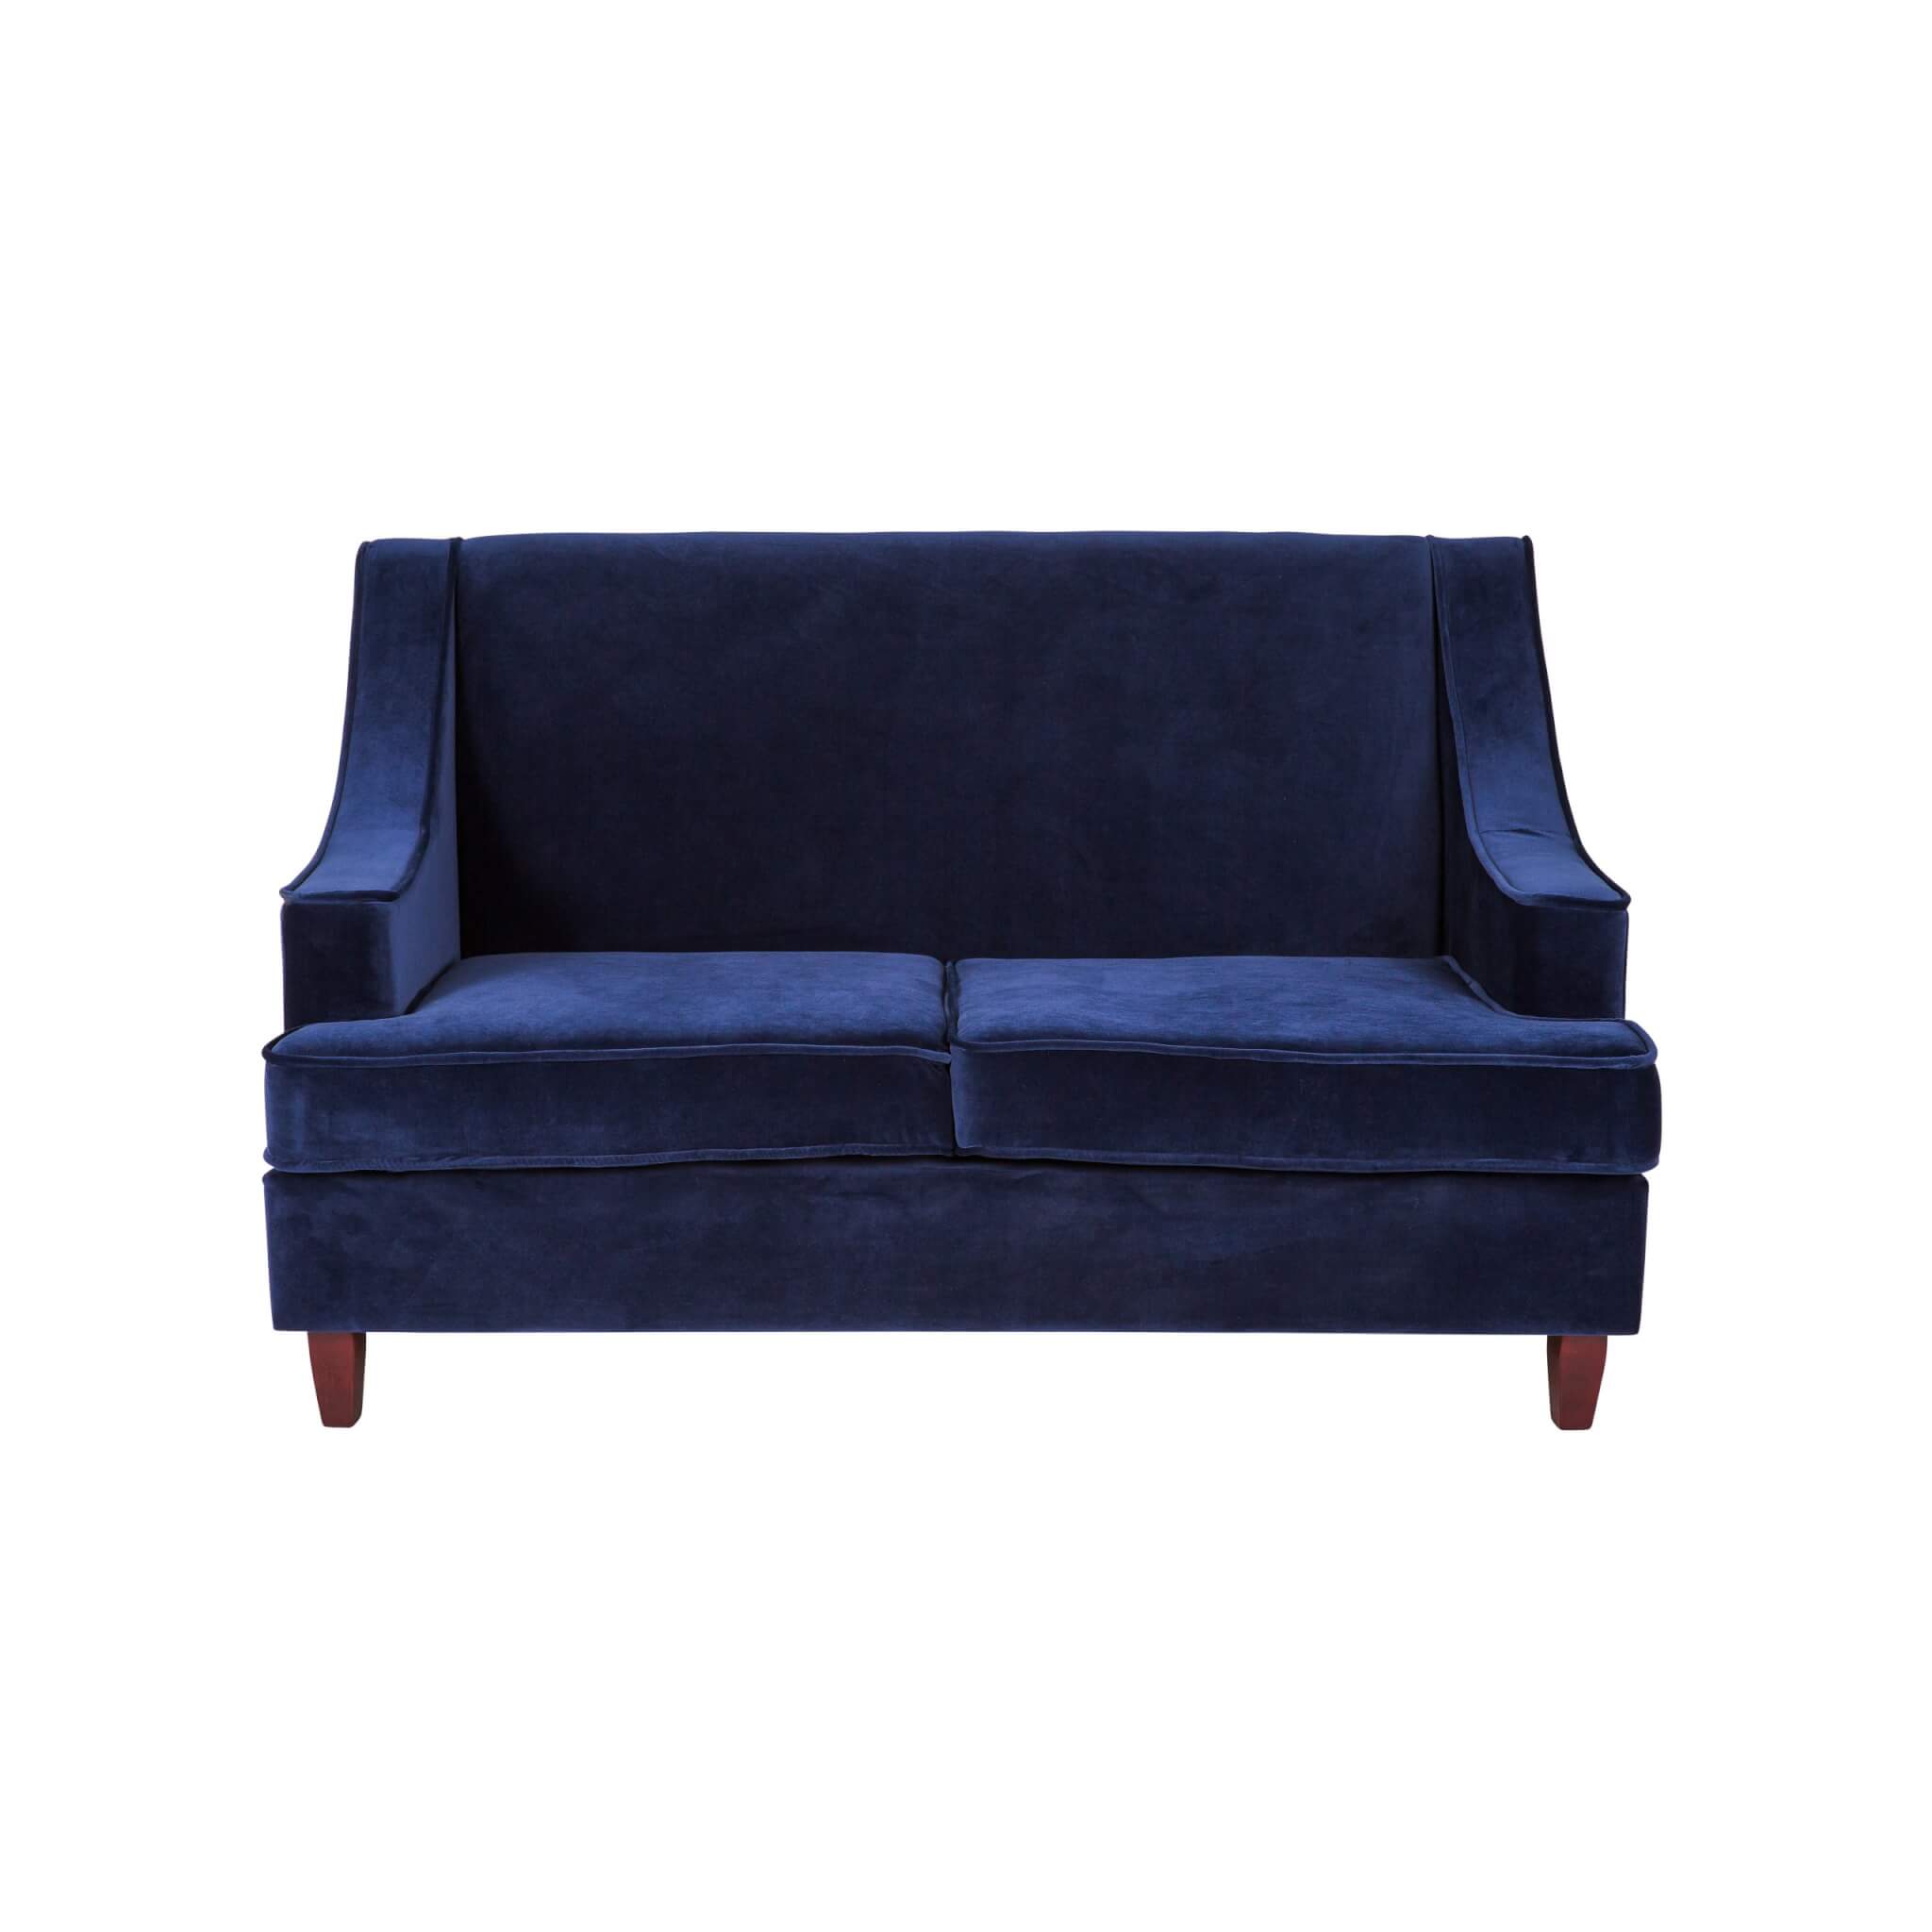 Hudson Two Seater Lounge – Navy Blue Velvet – 146cmL x 85cmW x 89cmH